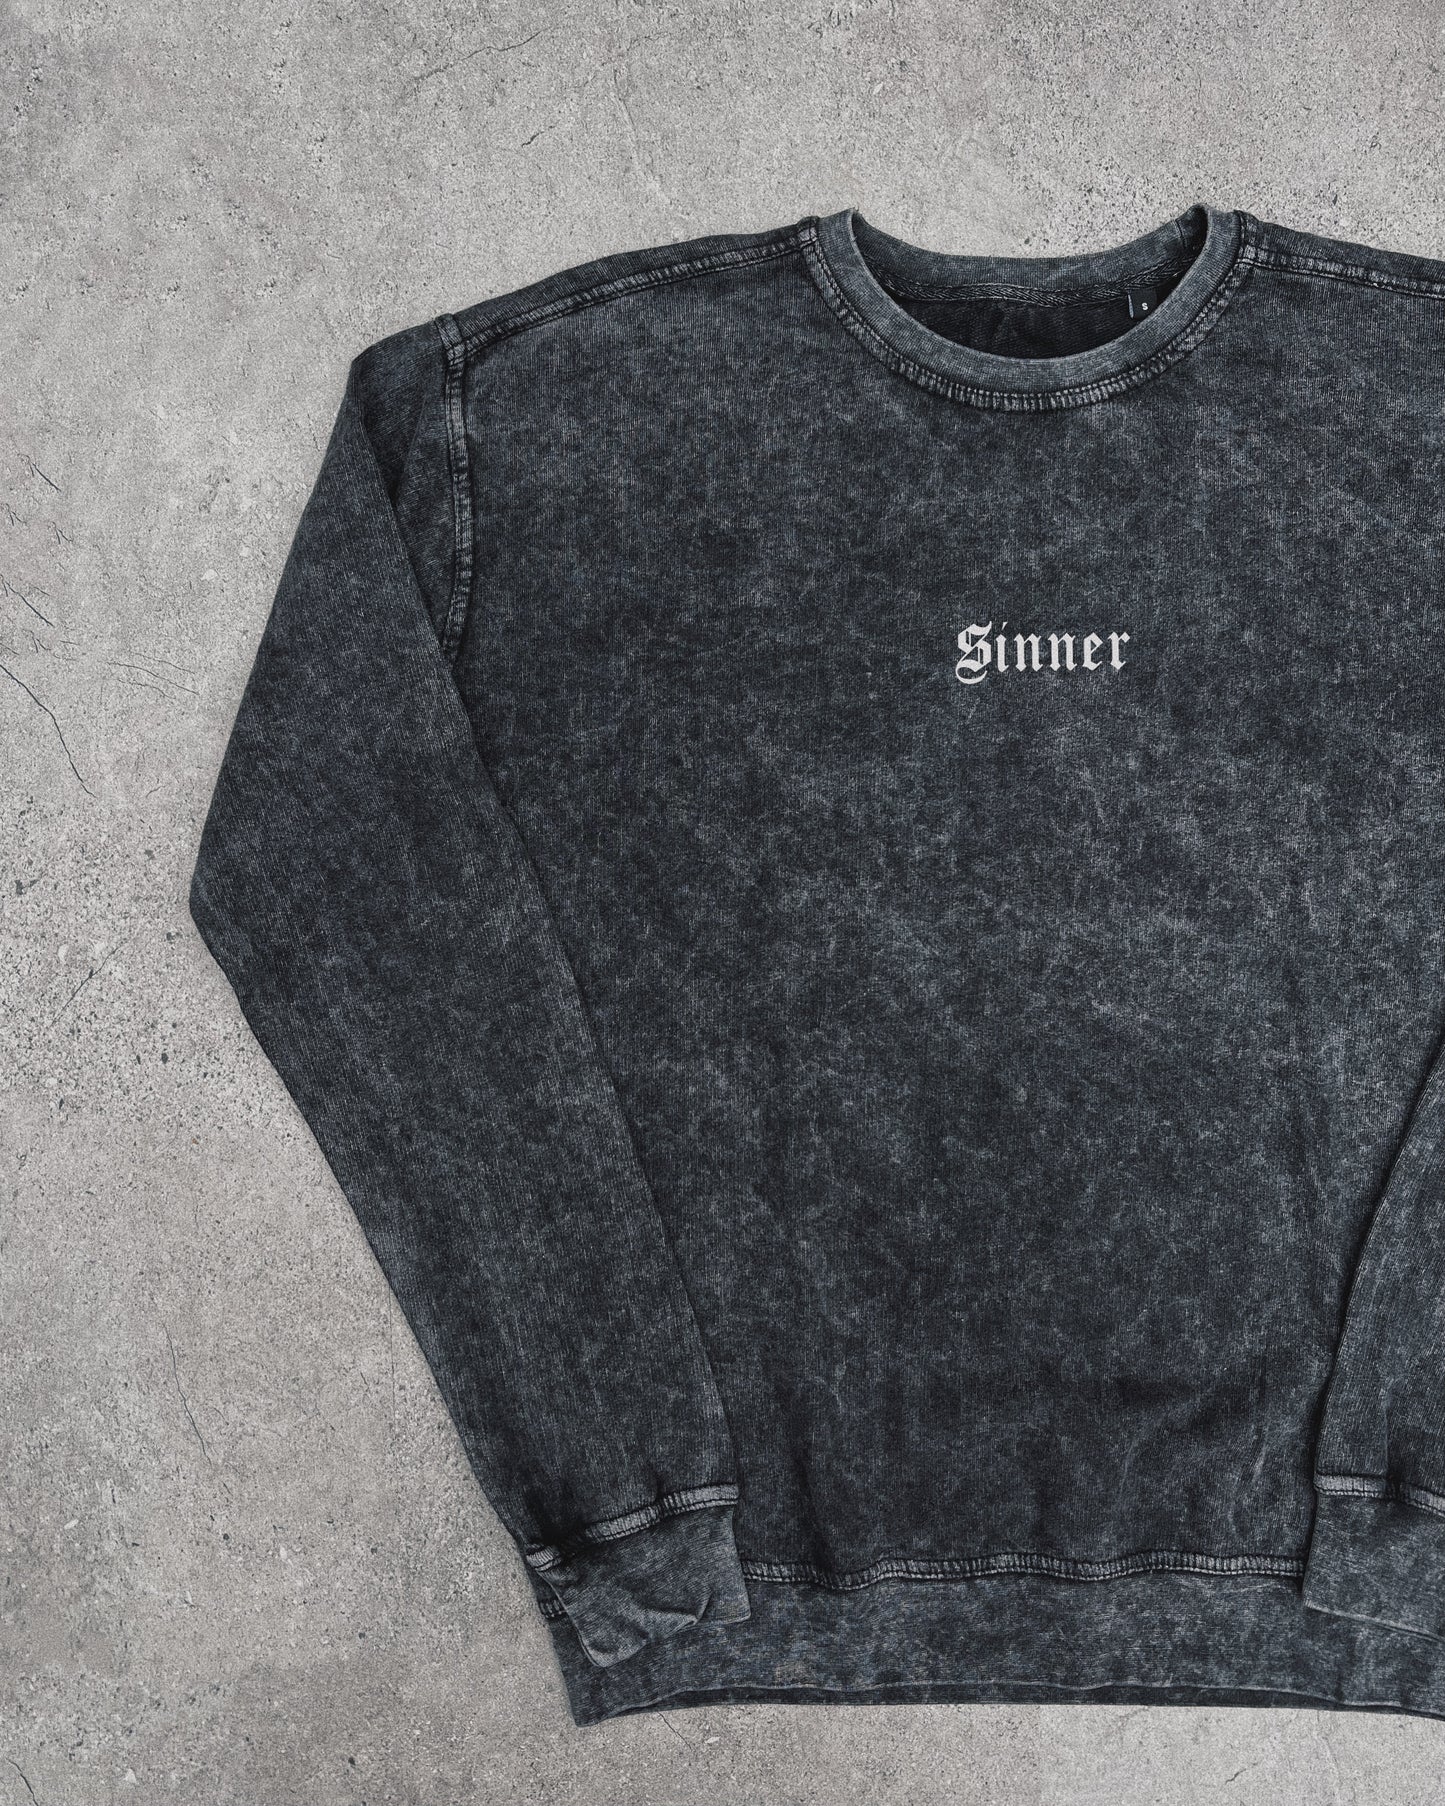 Aren’t We All Sinners? - Sweatshirt